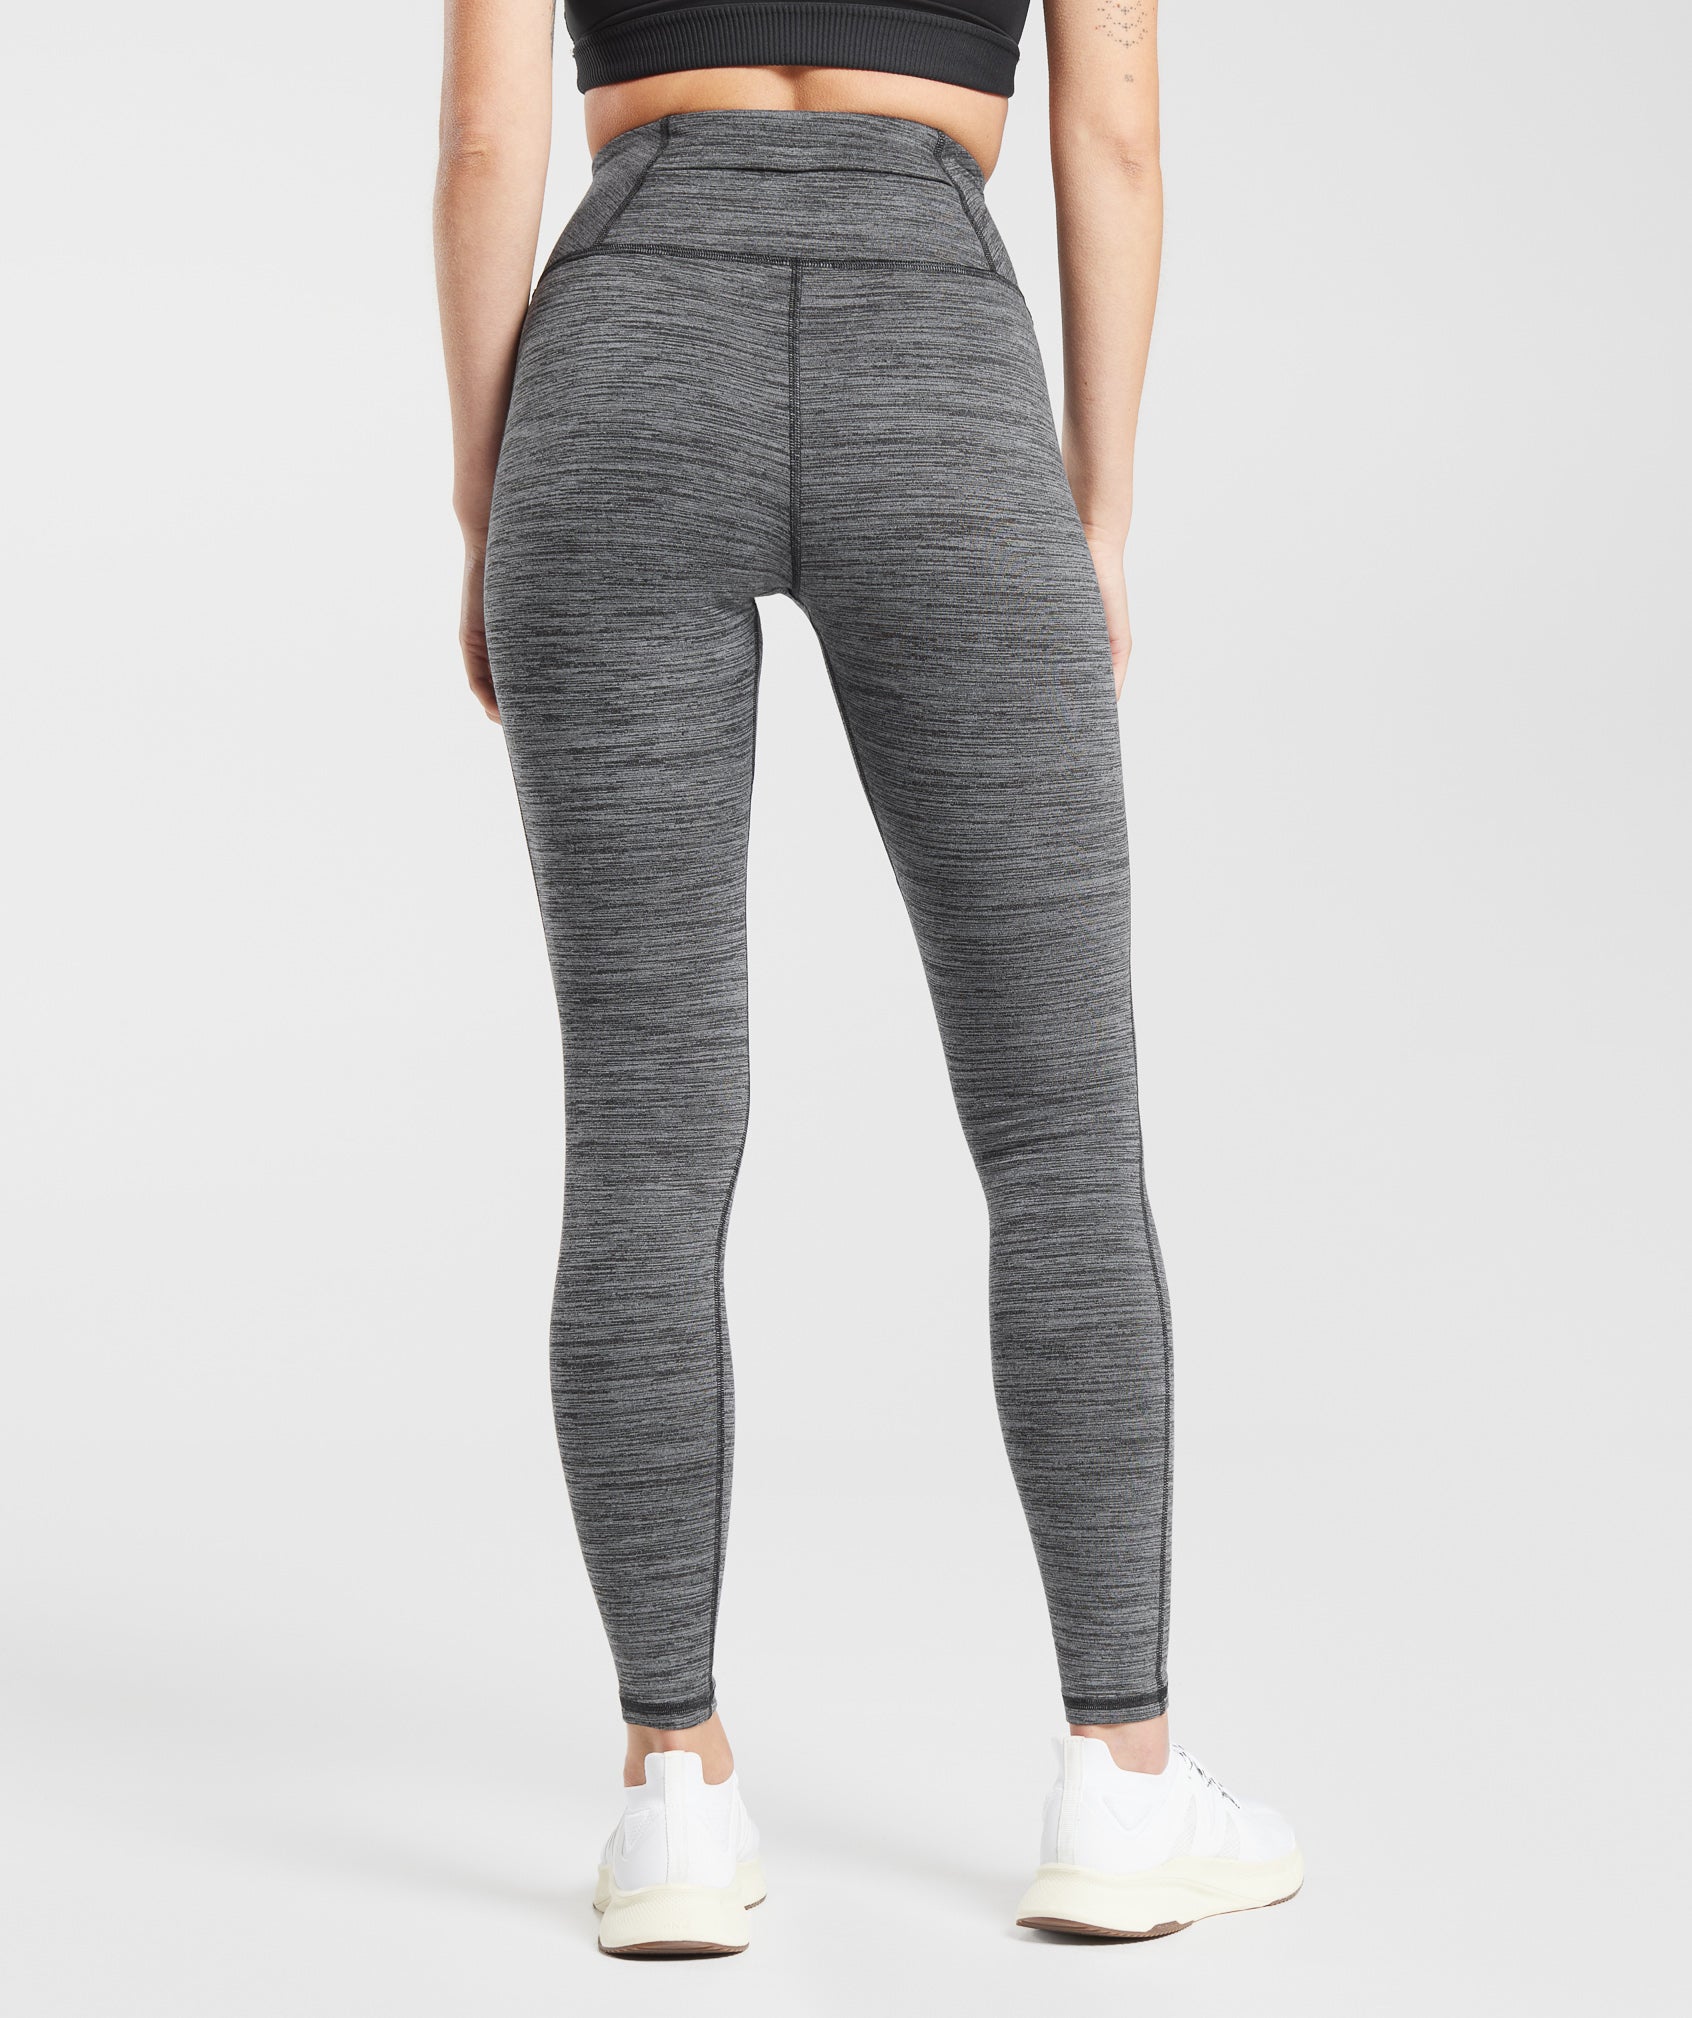 Gymshark Fleece Lined Pocket Leggings - Black/Pitch Grey | Gymshark